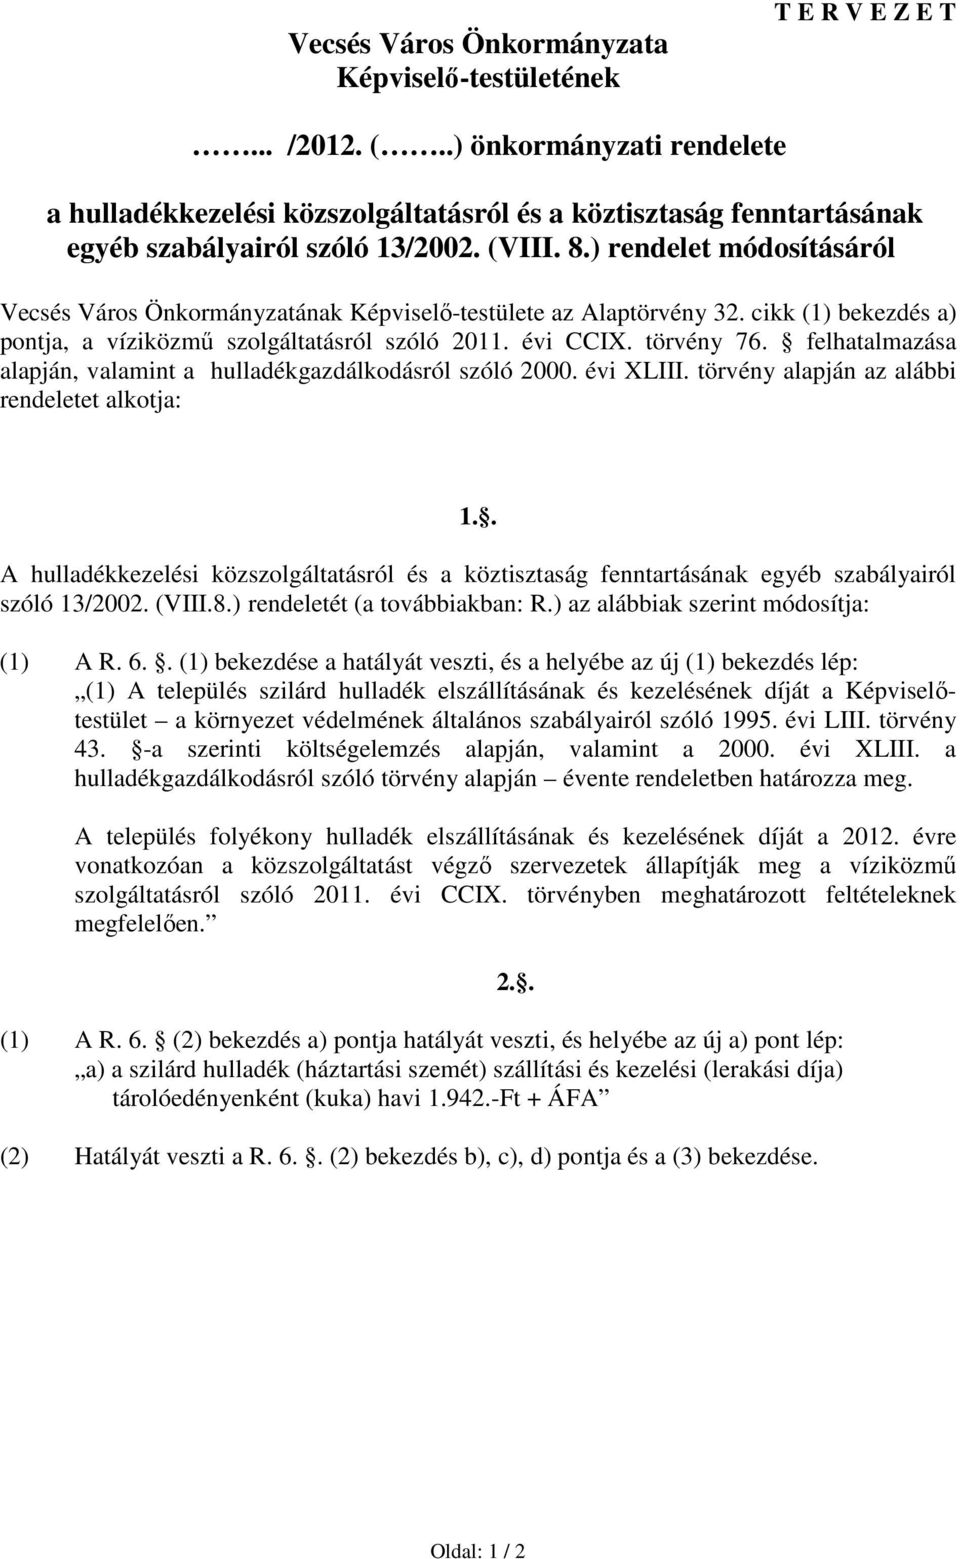 ) rendelet módosításáról Vecsés Város Önkormányzatának Képviselı-testülete az Alaptörvény 32. cikk (1) bekezdés a) pontja, a víziközmő szolgáltatásról szóló 2011. évi CCIX. törvény 76.